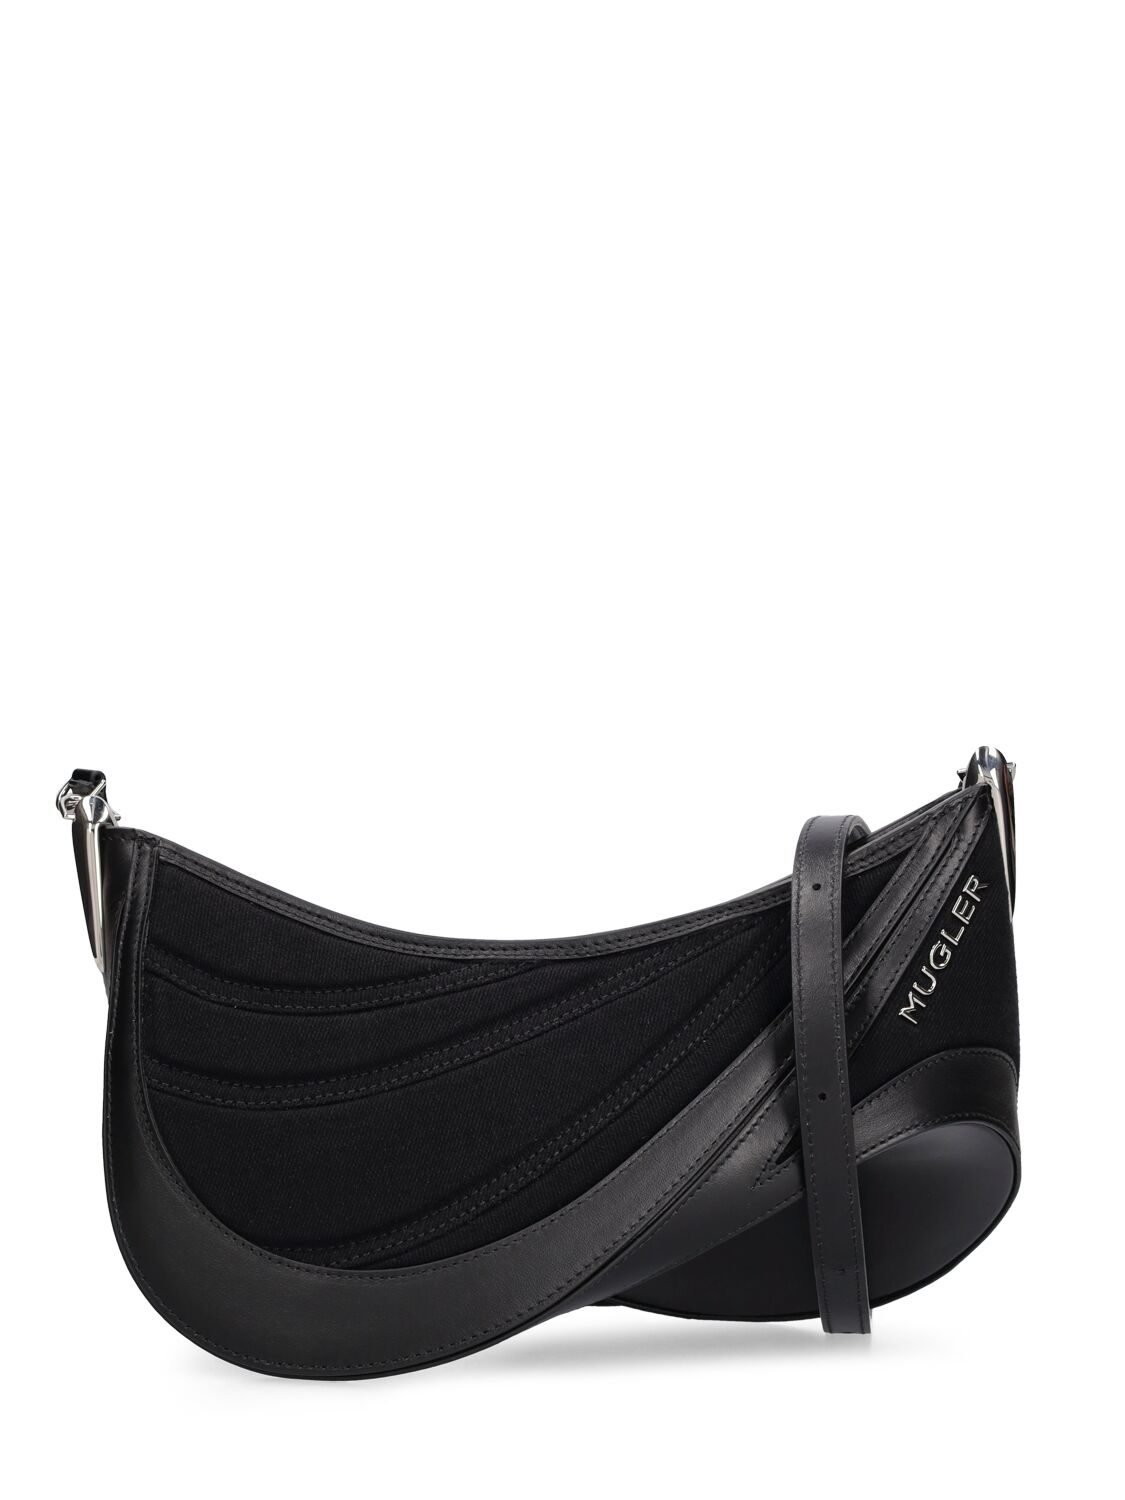 Mugler Medium Spiral Curve Leather Shoulder Bag In Black